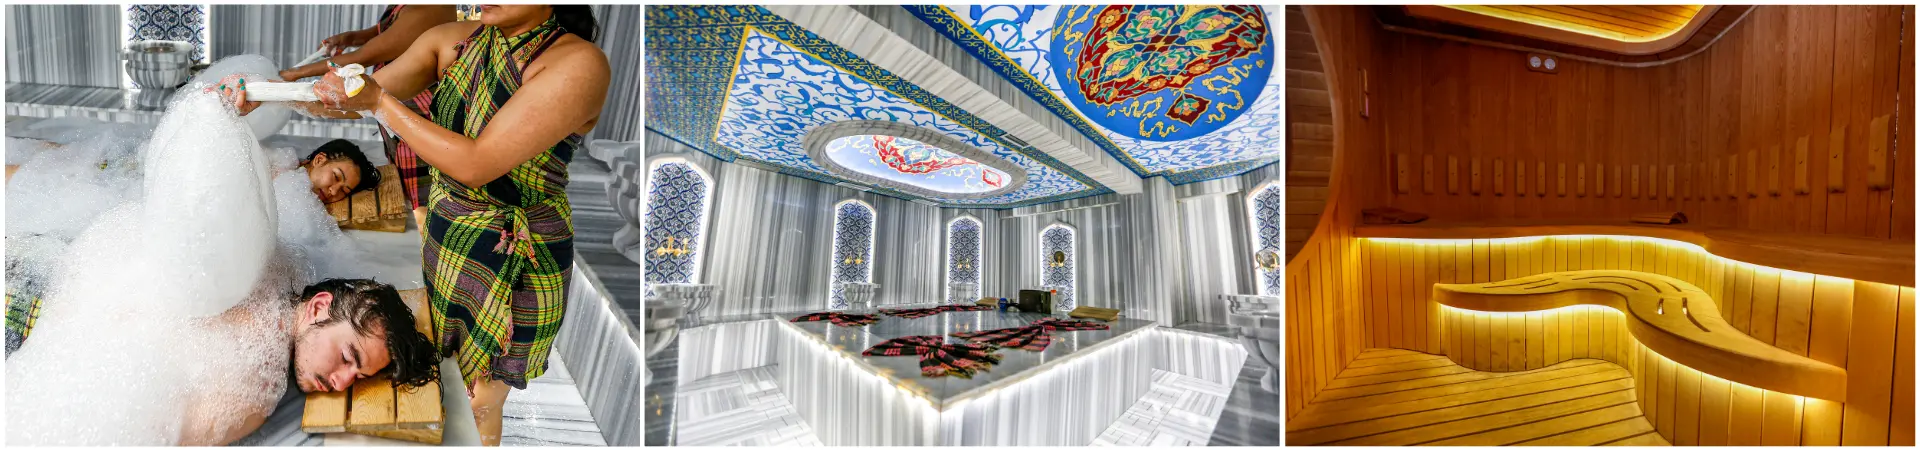 Sultan Suleyman Turkish Bath